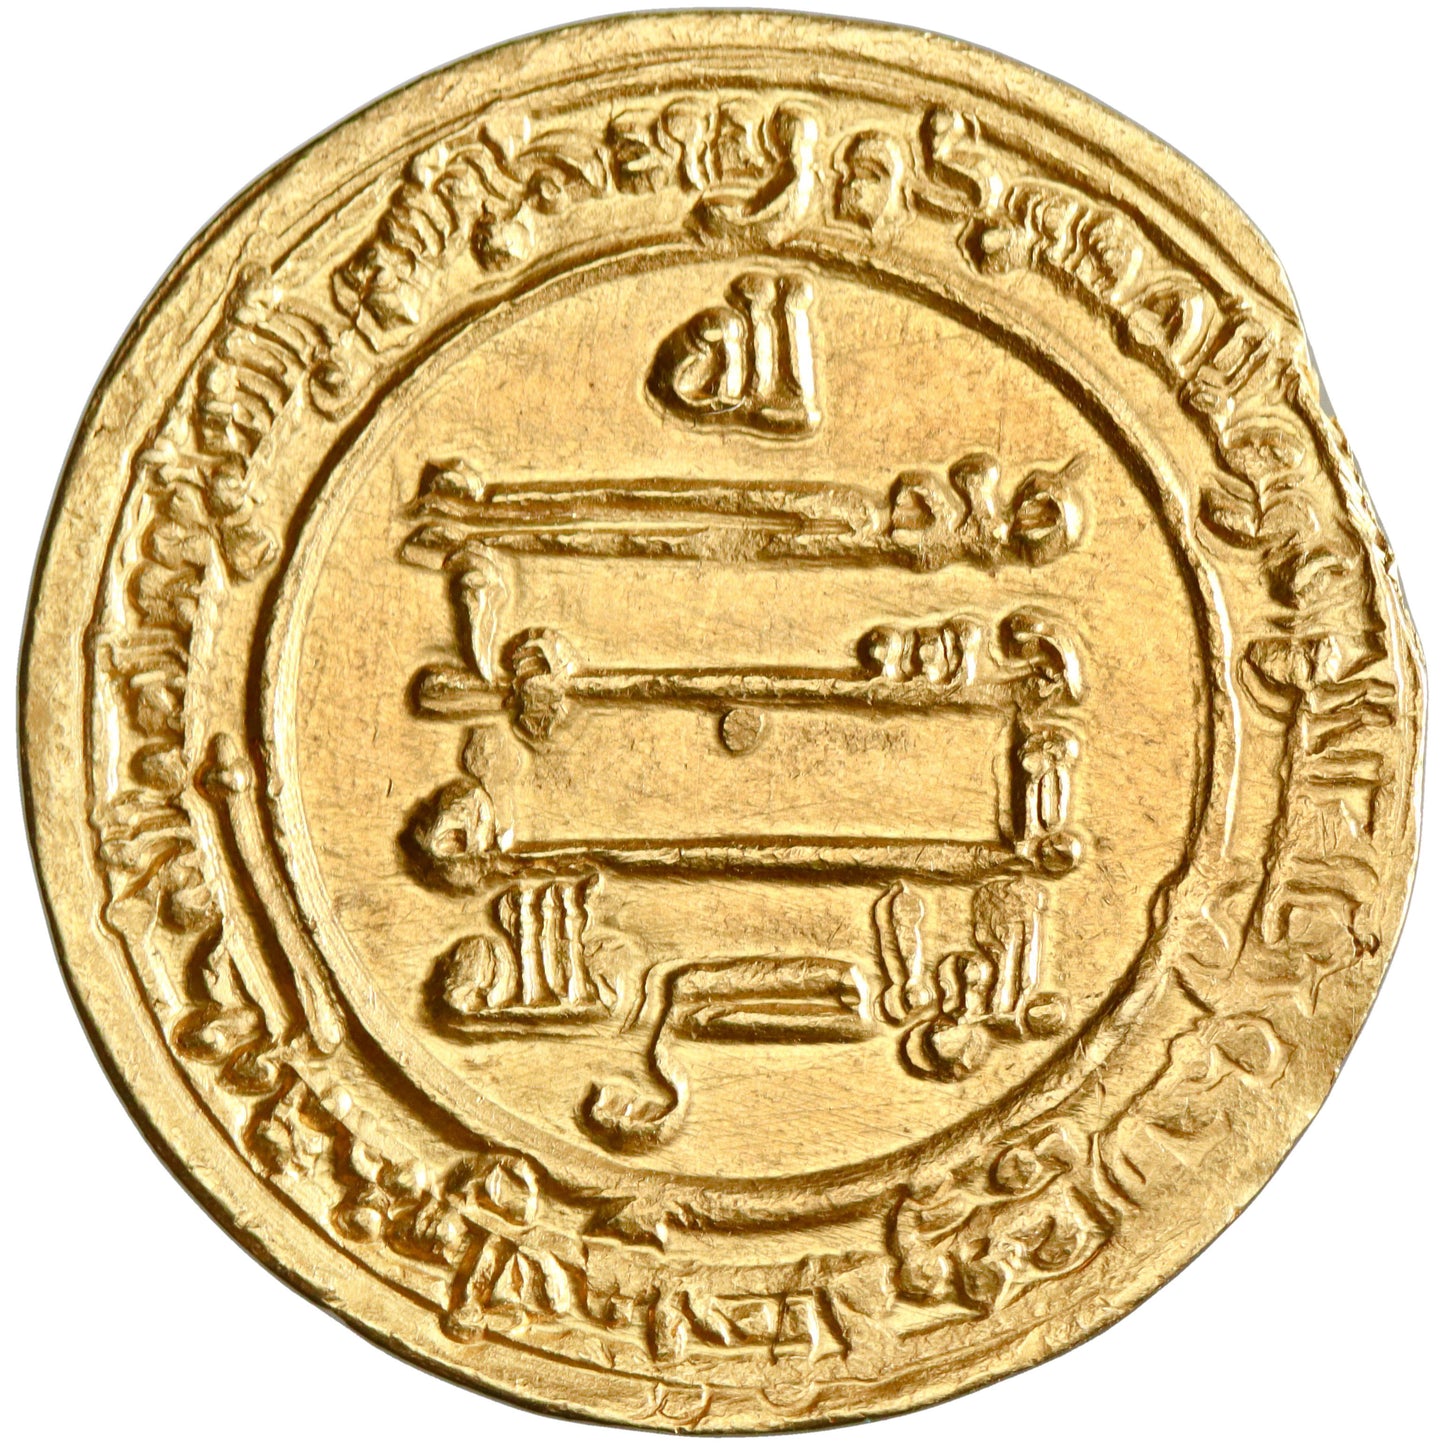 Abbasid, al-Radi billah, gold dinar, Misr (Egypt) mint, AH 323